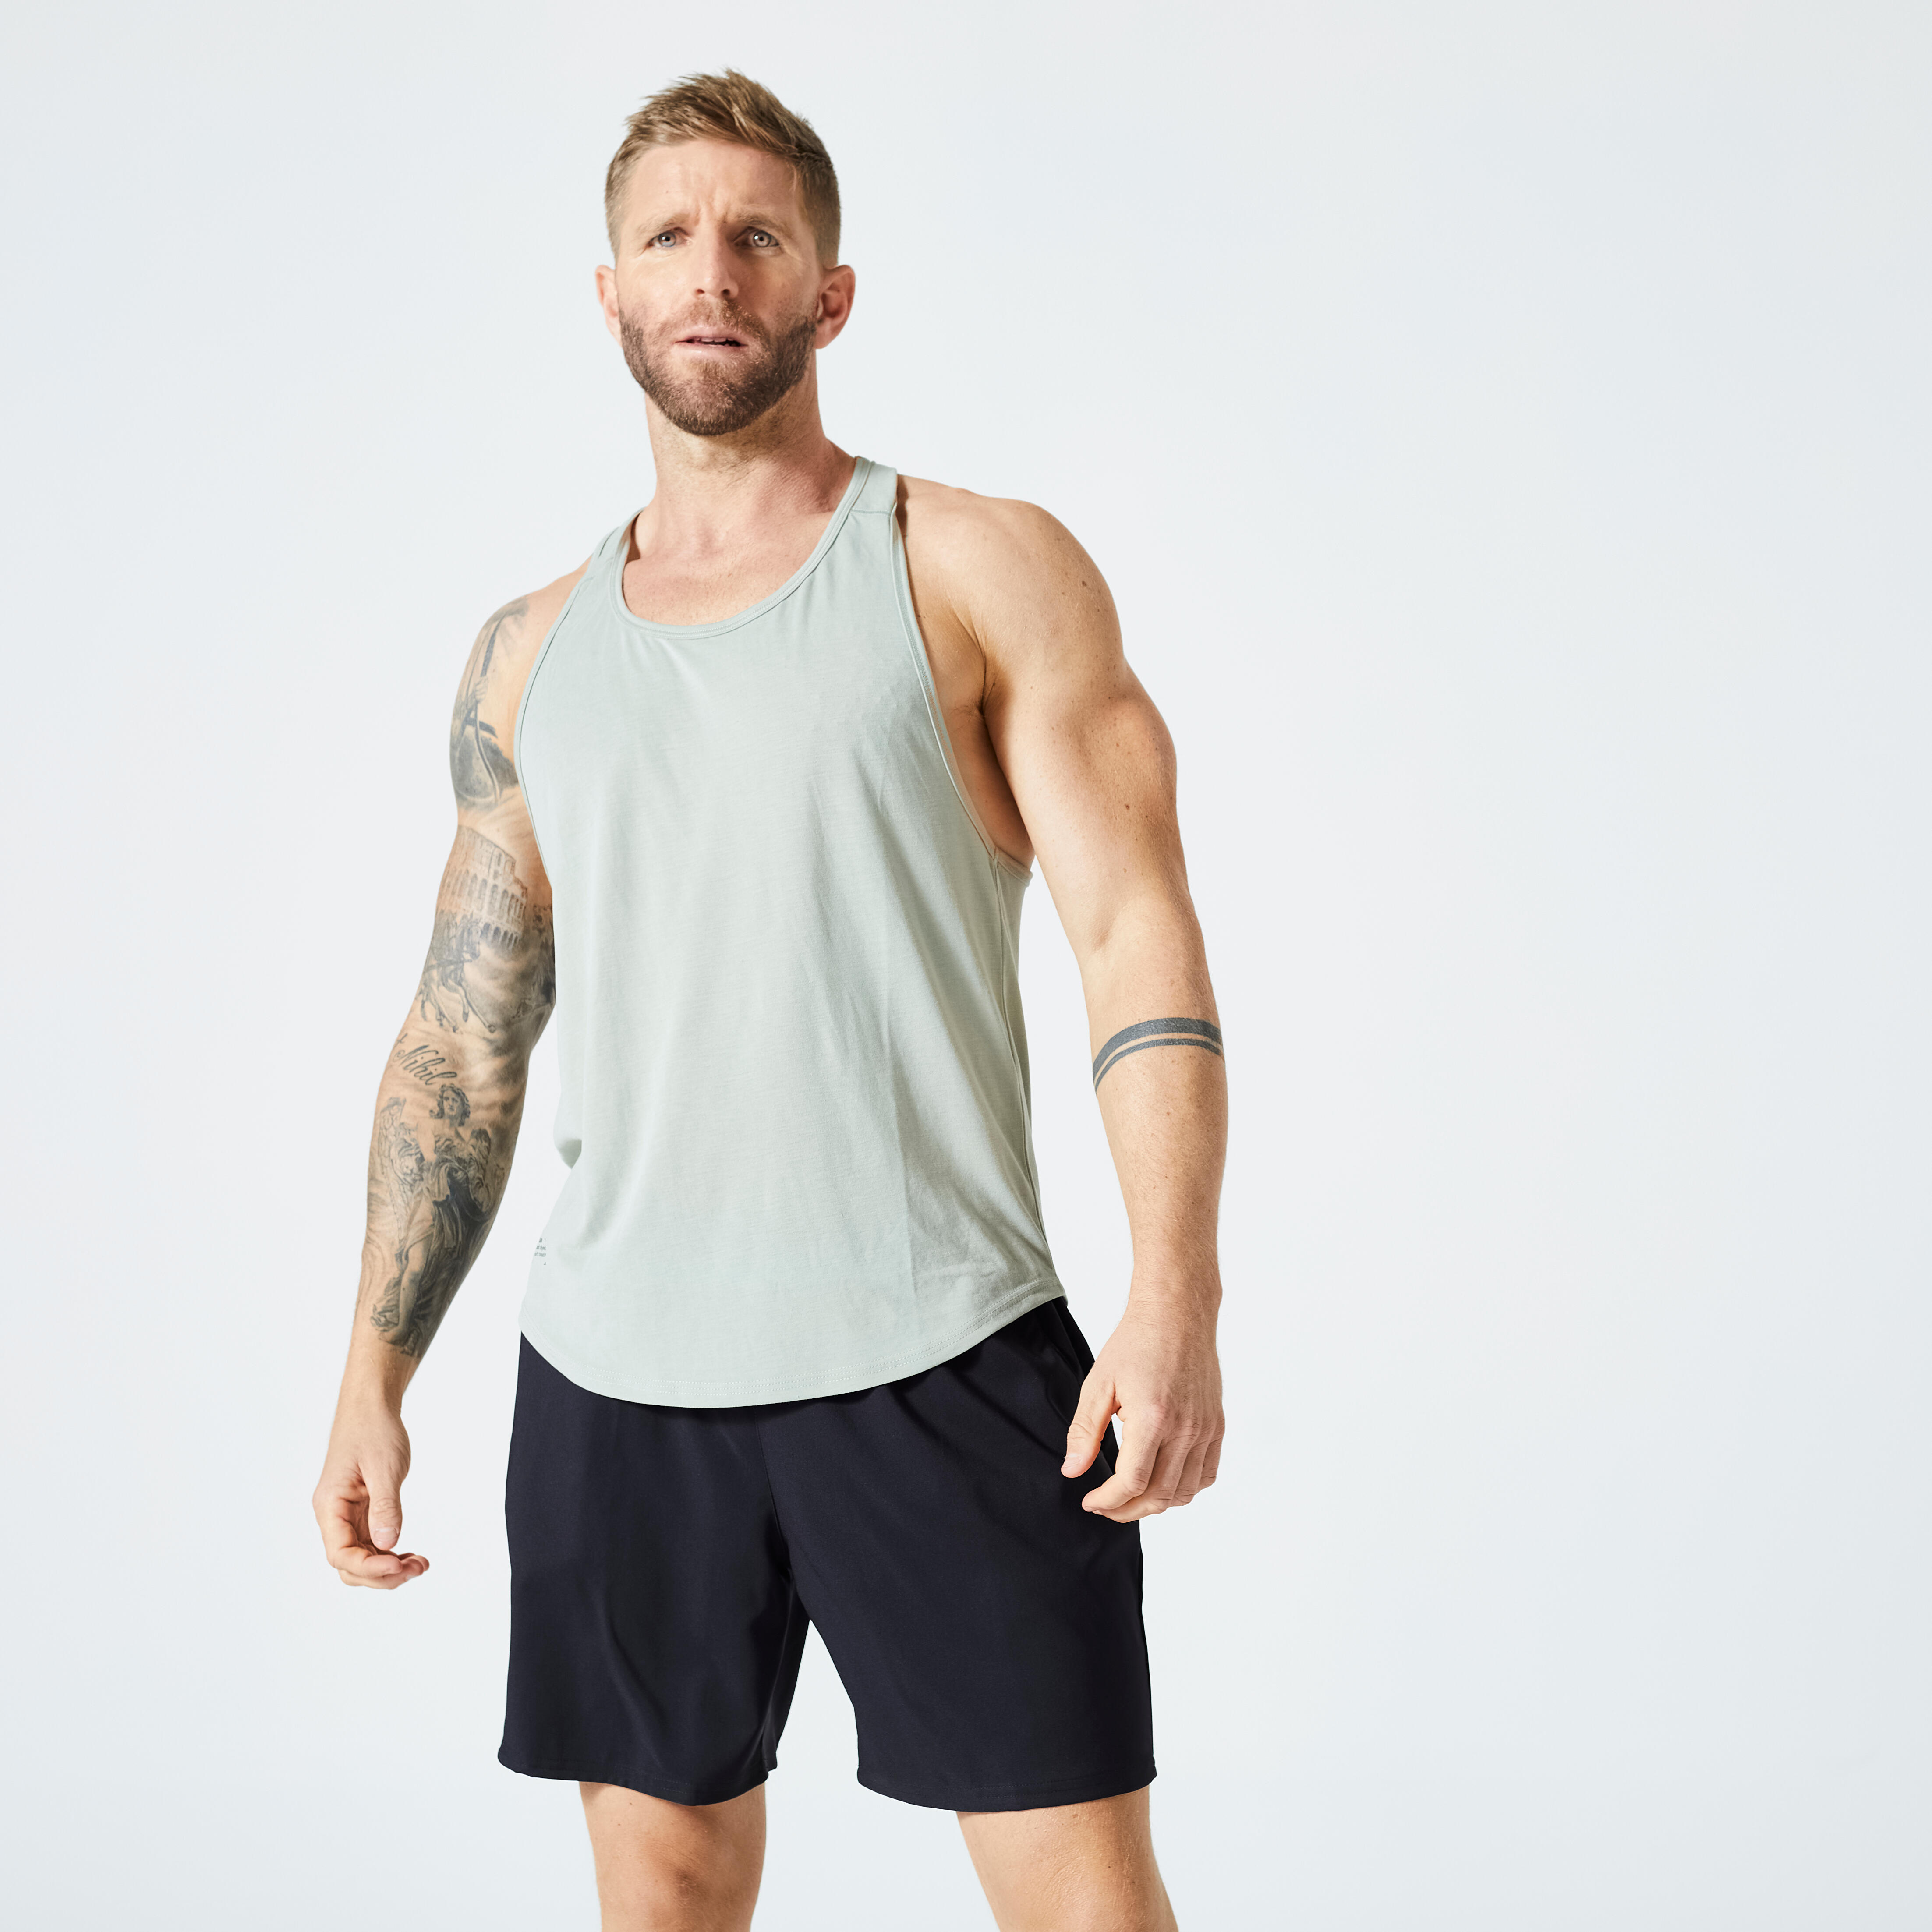 Buy Men's Gym T-back stringer Sleeveless Sports Vest Online